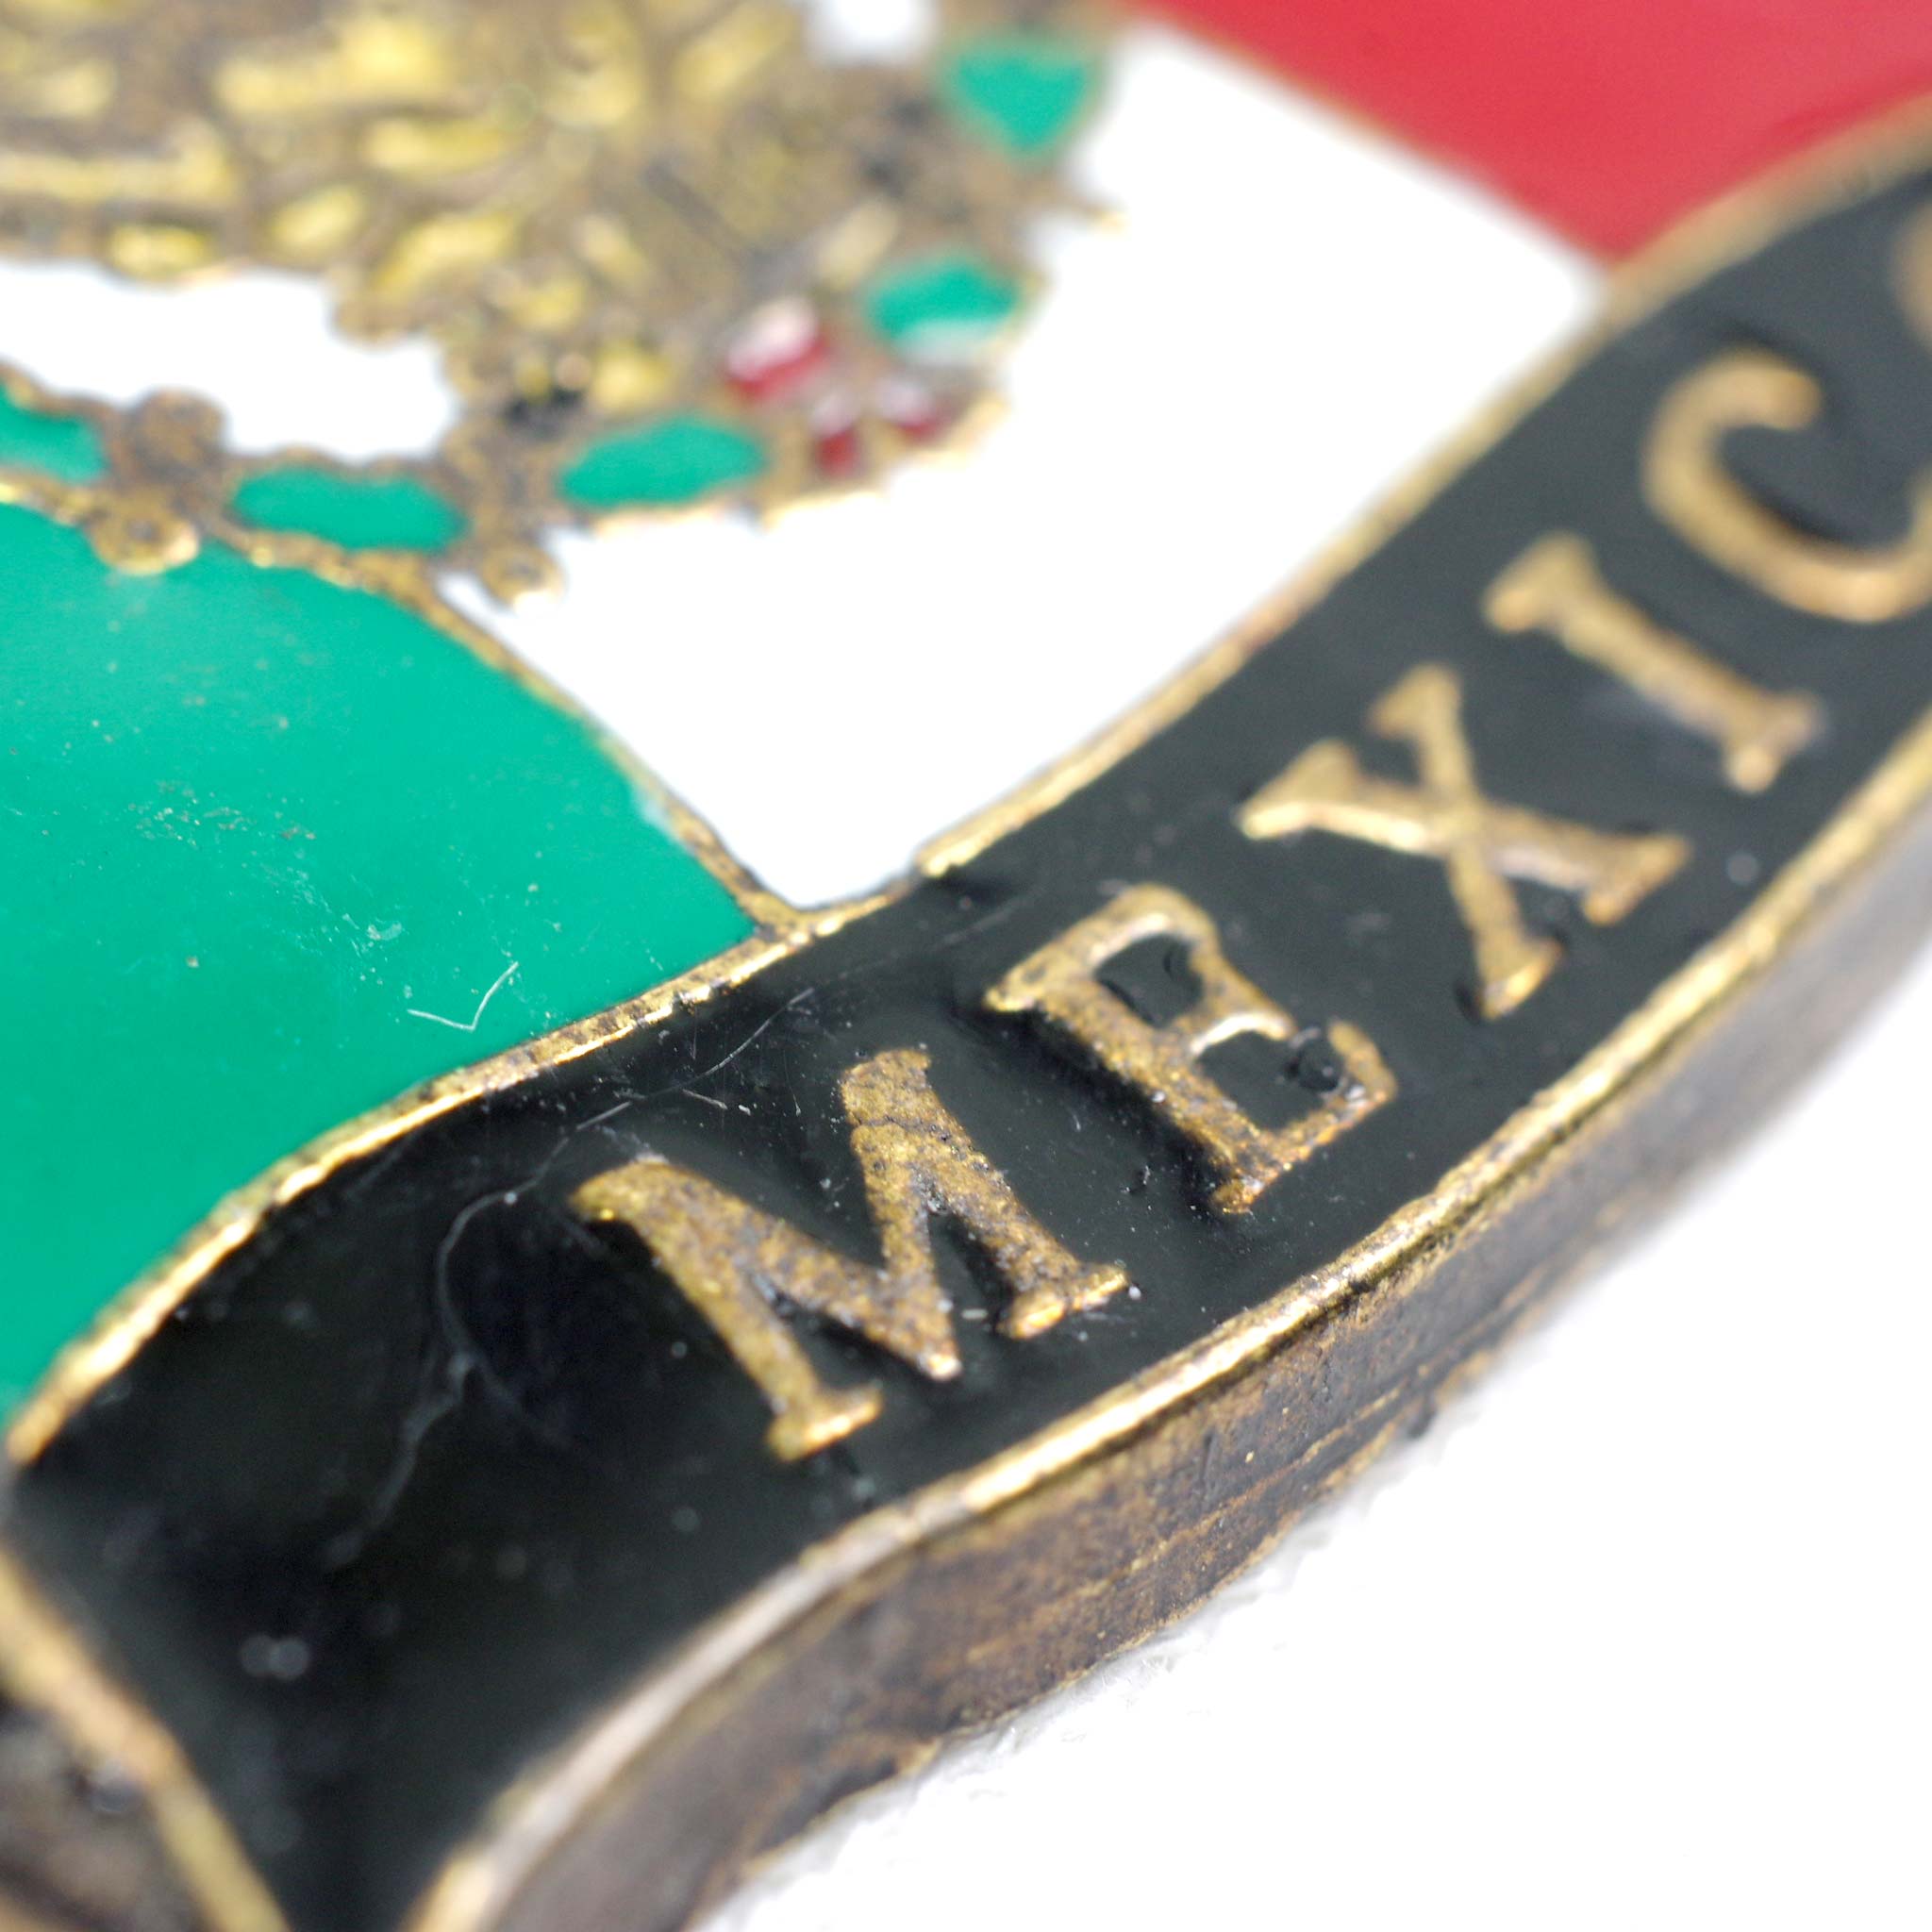 “メキシカンKC,メキシカン,メキシコのモチーフ,キーホルダー,キーチェーン,キーリング,メキシコ,メキシコ雑貨,メキシコPAD,メキシコ雑貨PAD”